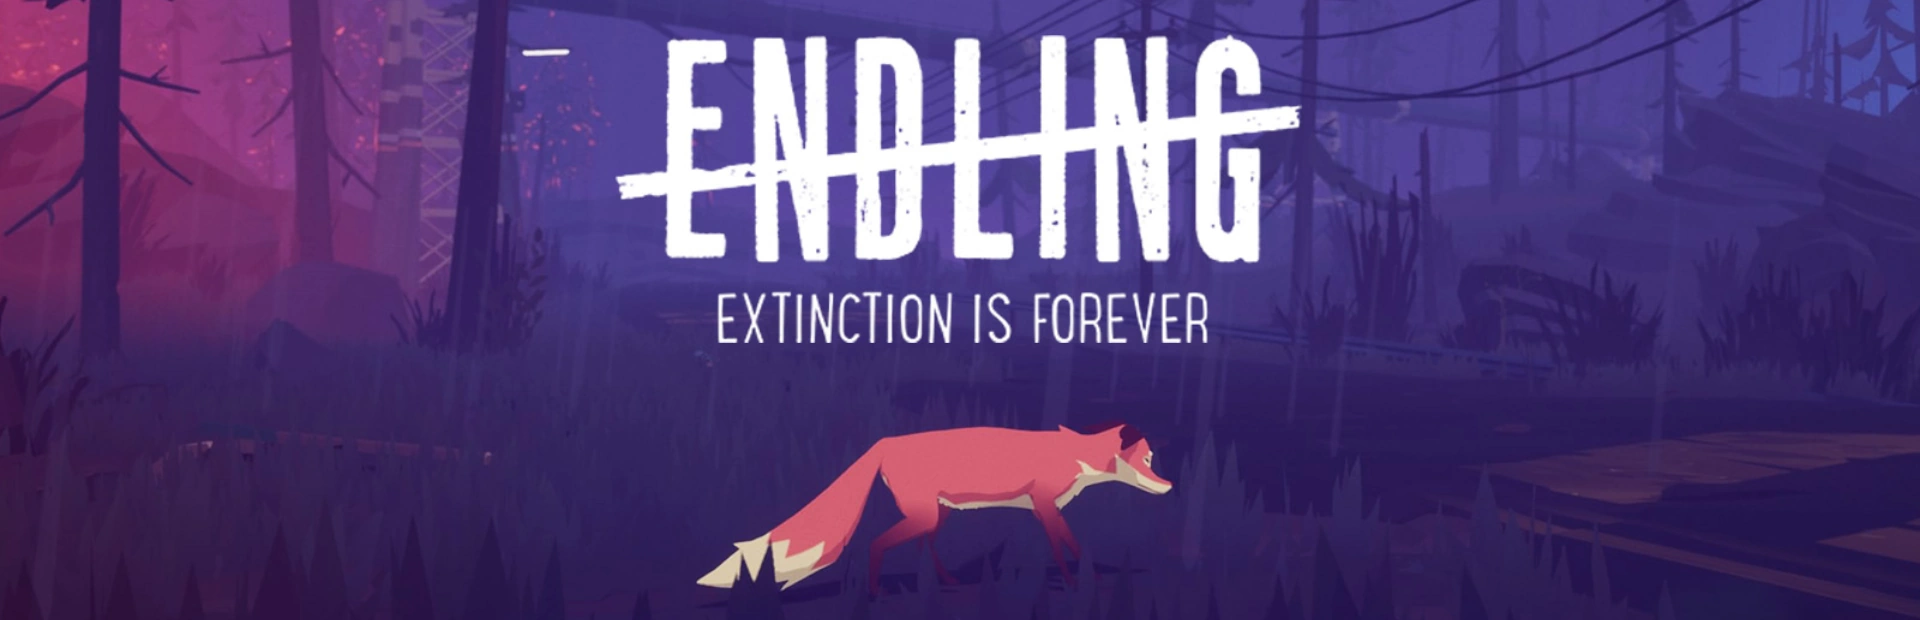 دانلود بازی Endling - Extinction is Forever برای کامپیوتر |گیمباتو